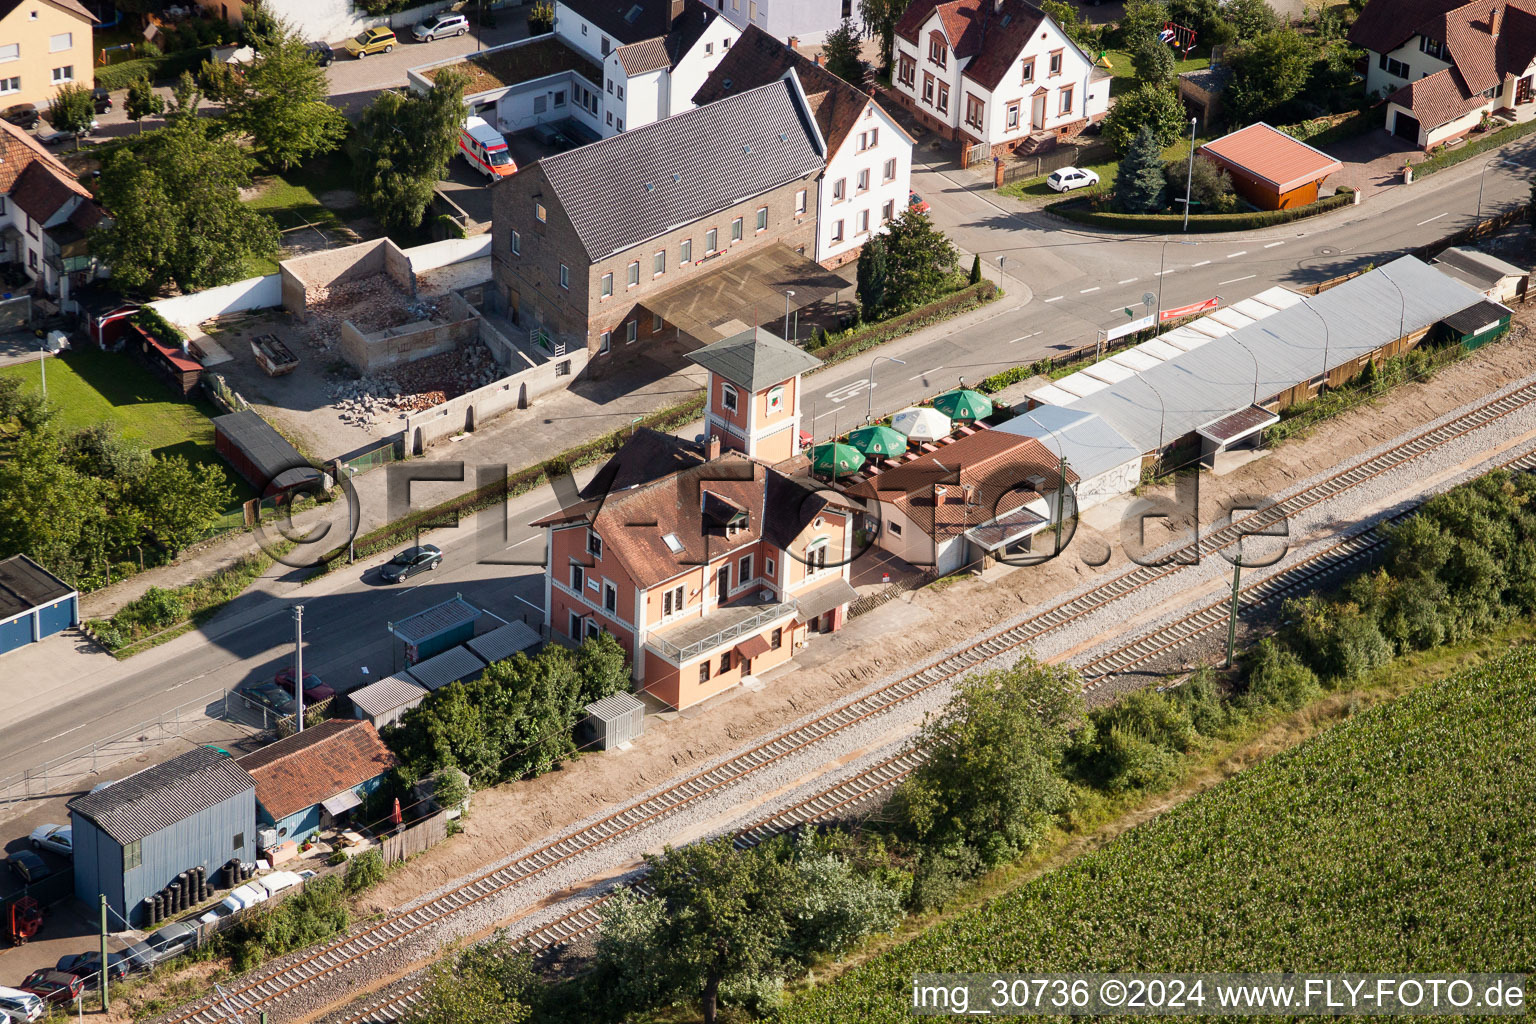 Station railway building of the Deutsche Bahn in Ruelzheim in the state Rhineland-Palatinate